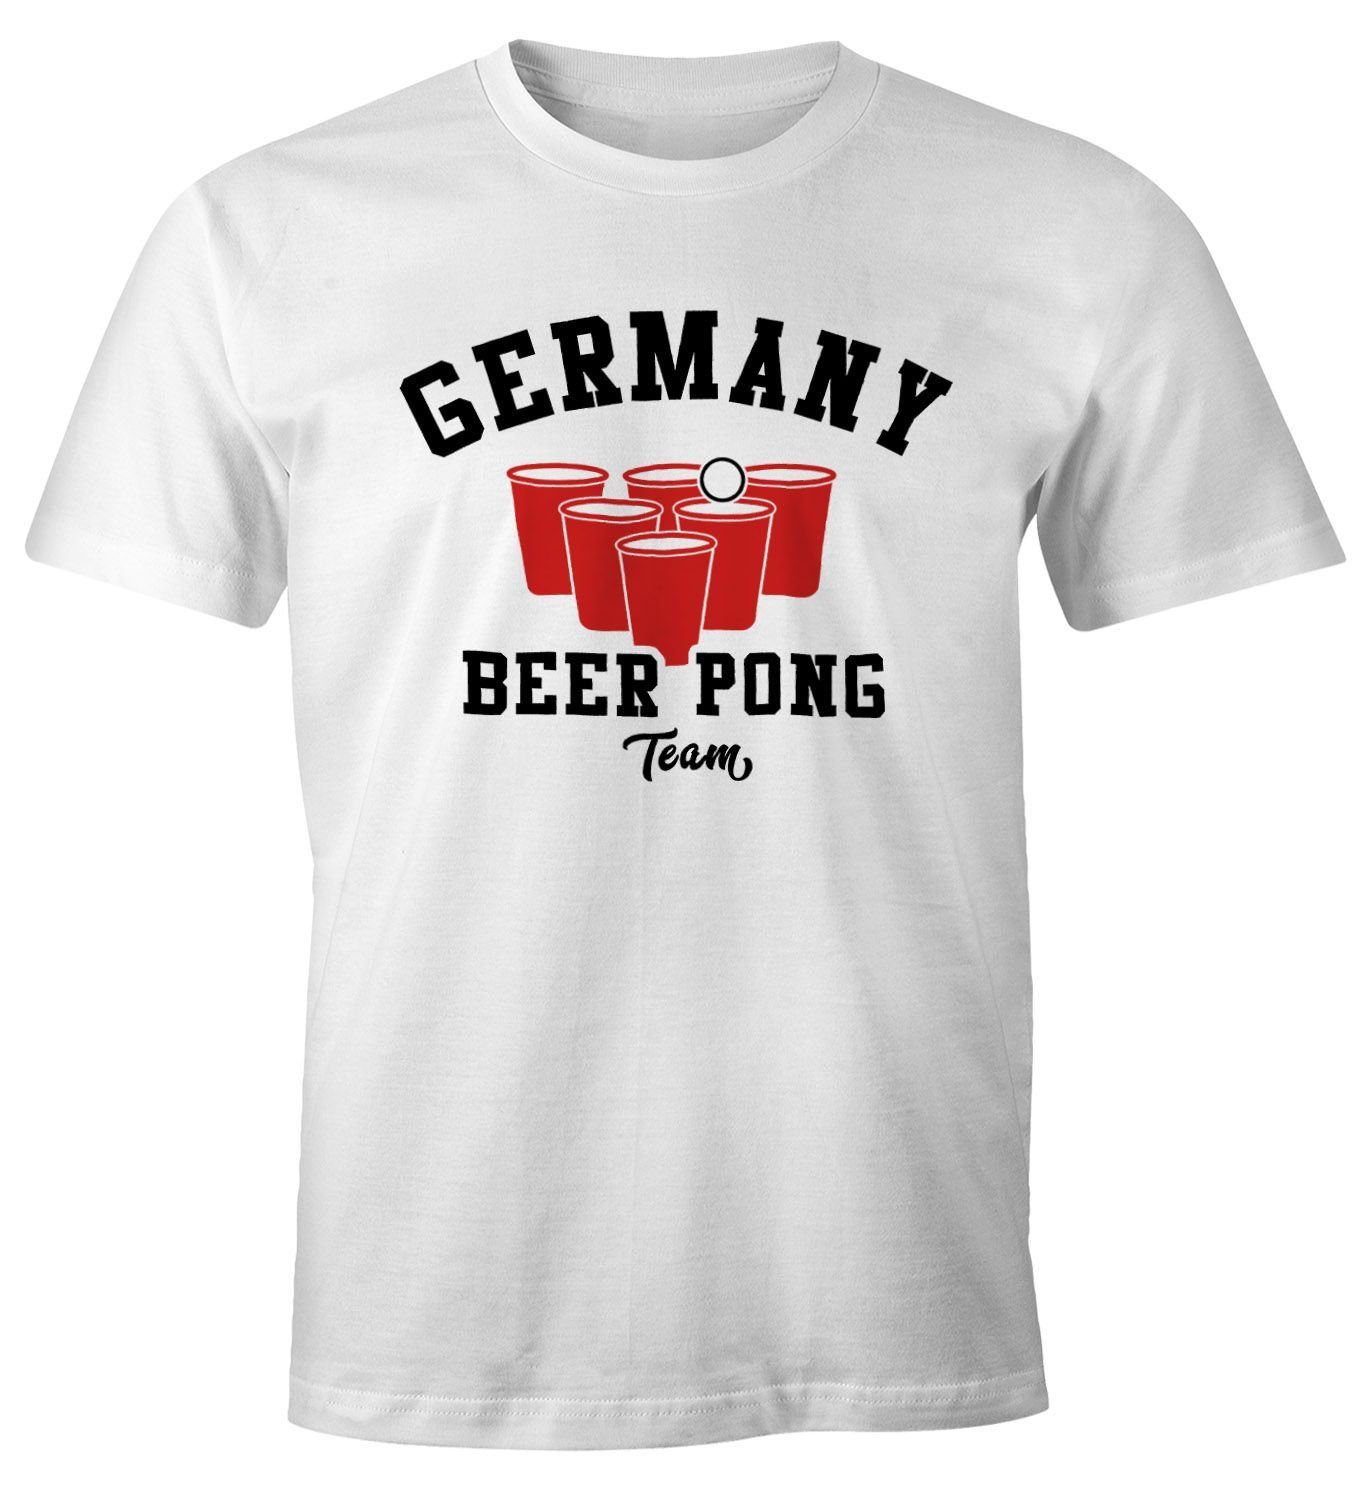 MoonWorks Print-Shirt Herren T-Shirt Germany Beer Pong Team Bier Fun-Shirt Moonworks® mit Print weiß